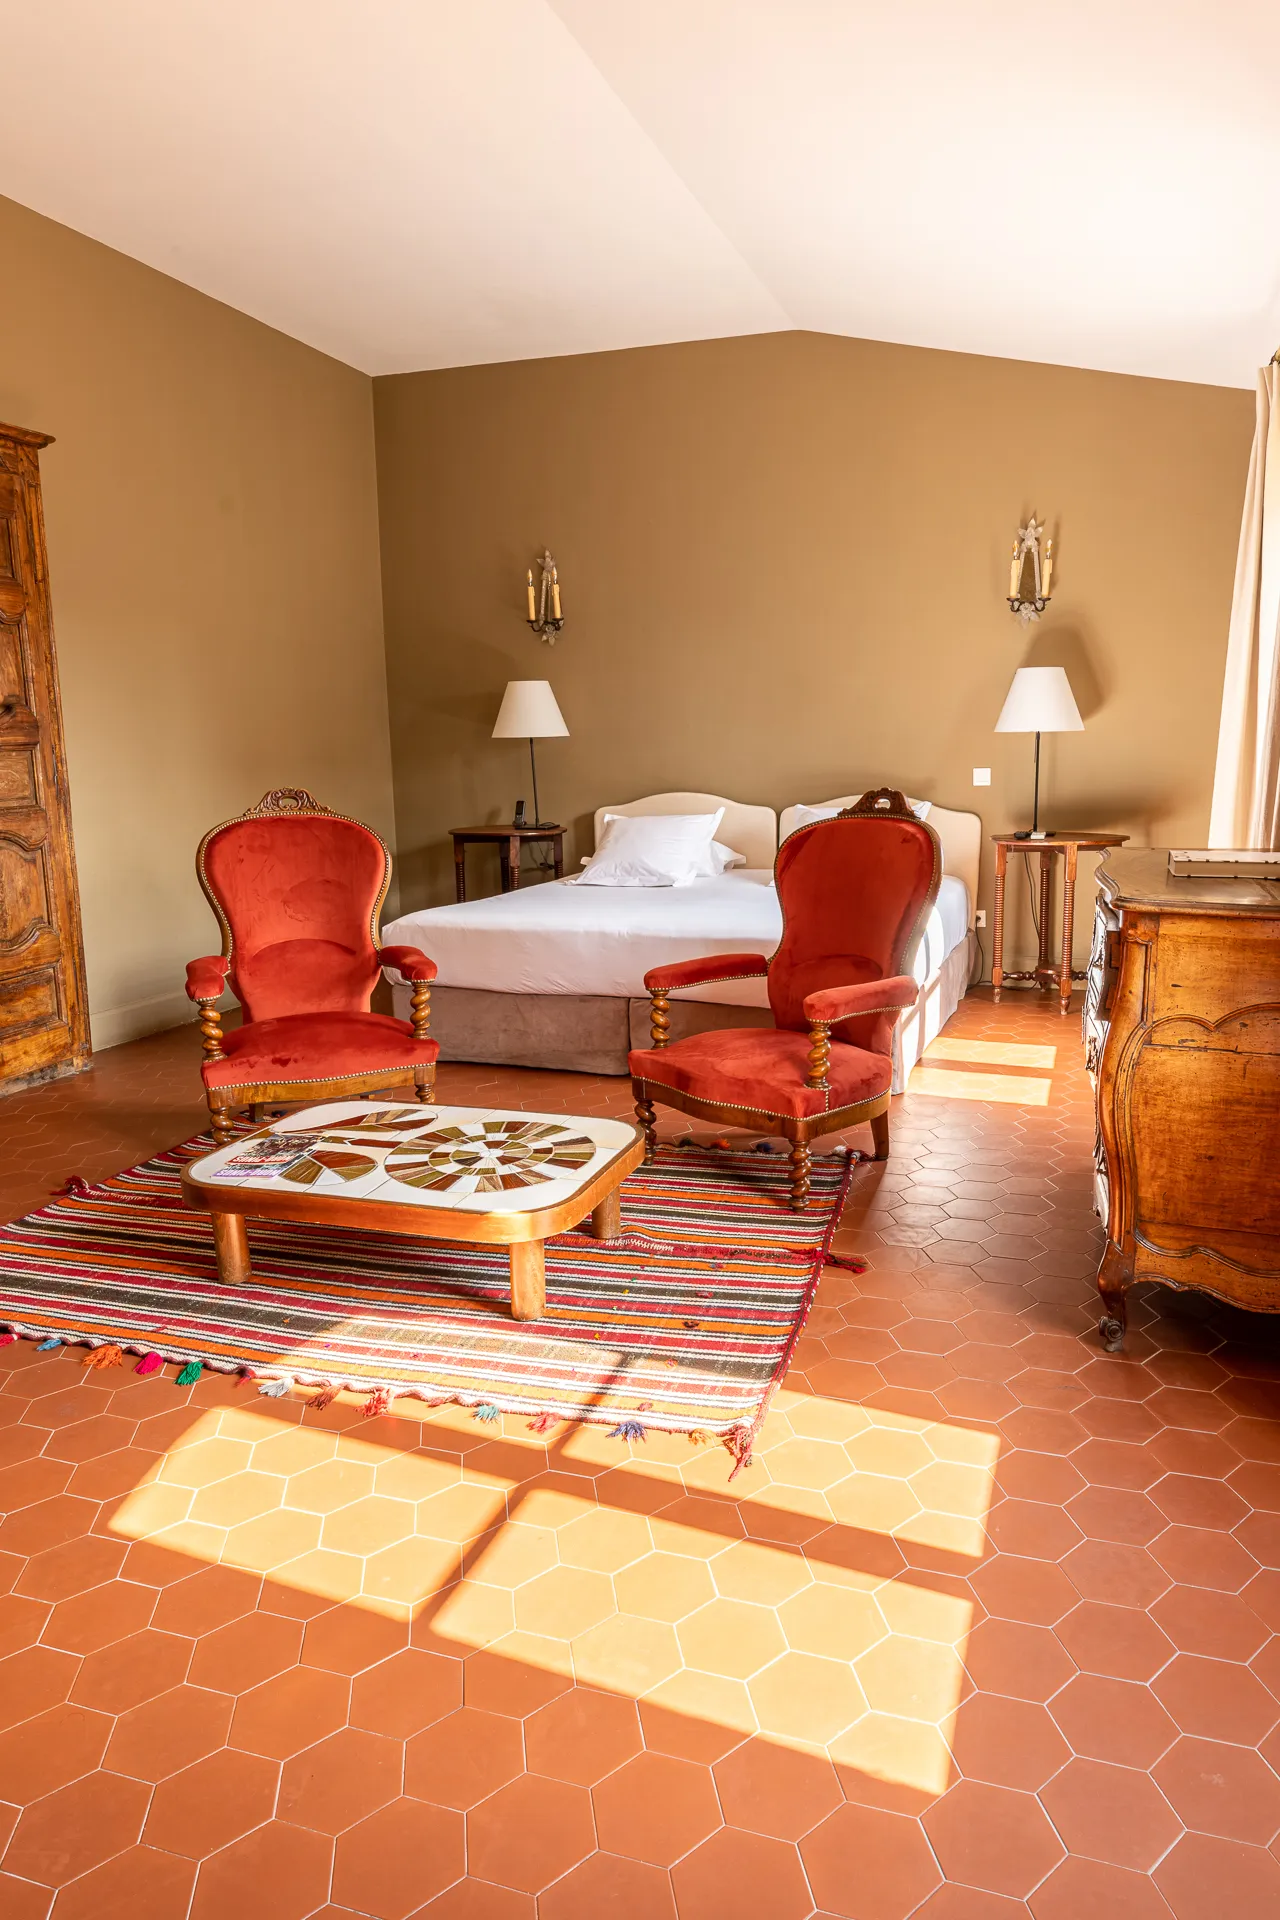 Chambre de l'hôtel Le Nord-Pinus. A droite, un rayon de soleil rentre depuis le fenêtre. Le sol est couvert de tomettes. Au centre de l'image, il y a deux fauteuils Napoléons III rouge, une table-basse et un lit derrière.